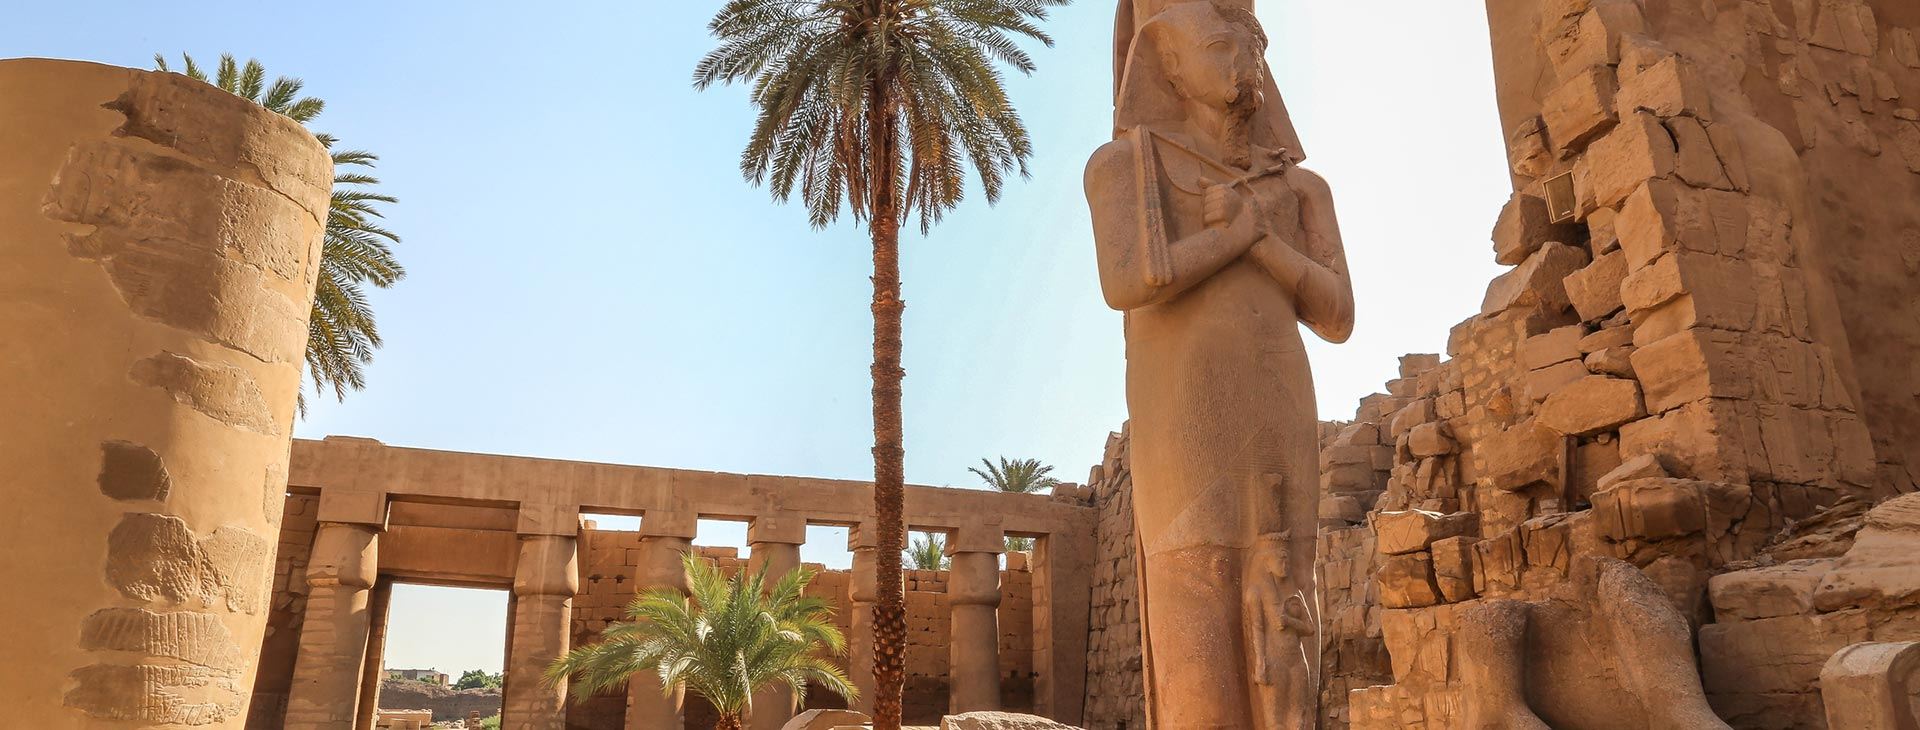 Geotour oferuje Hurgada Holiday Tour – wycieczka po Egipcie